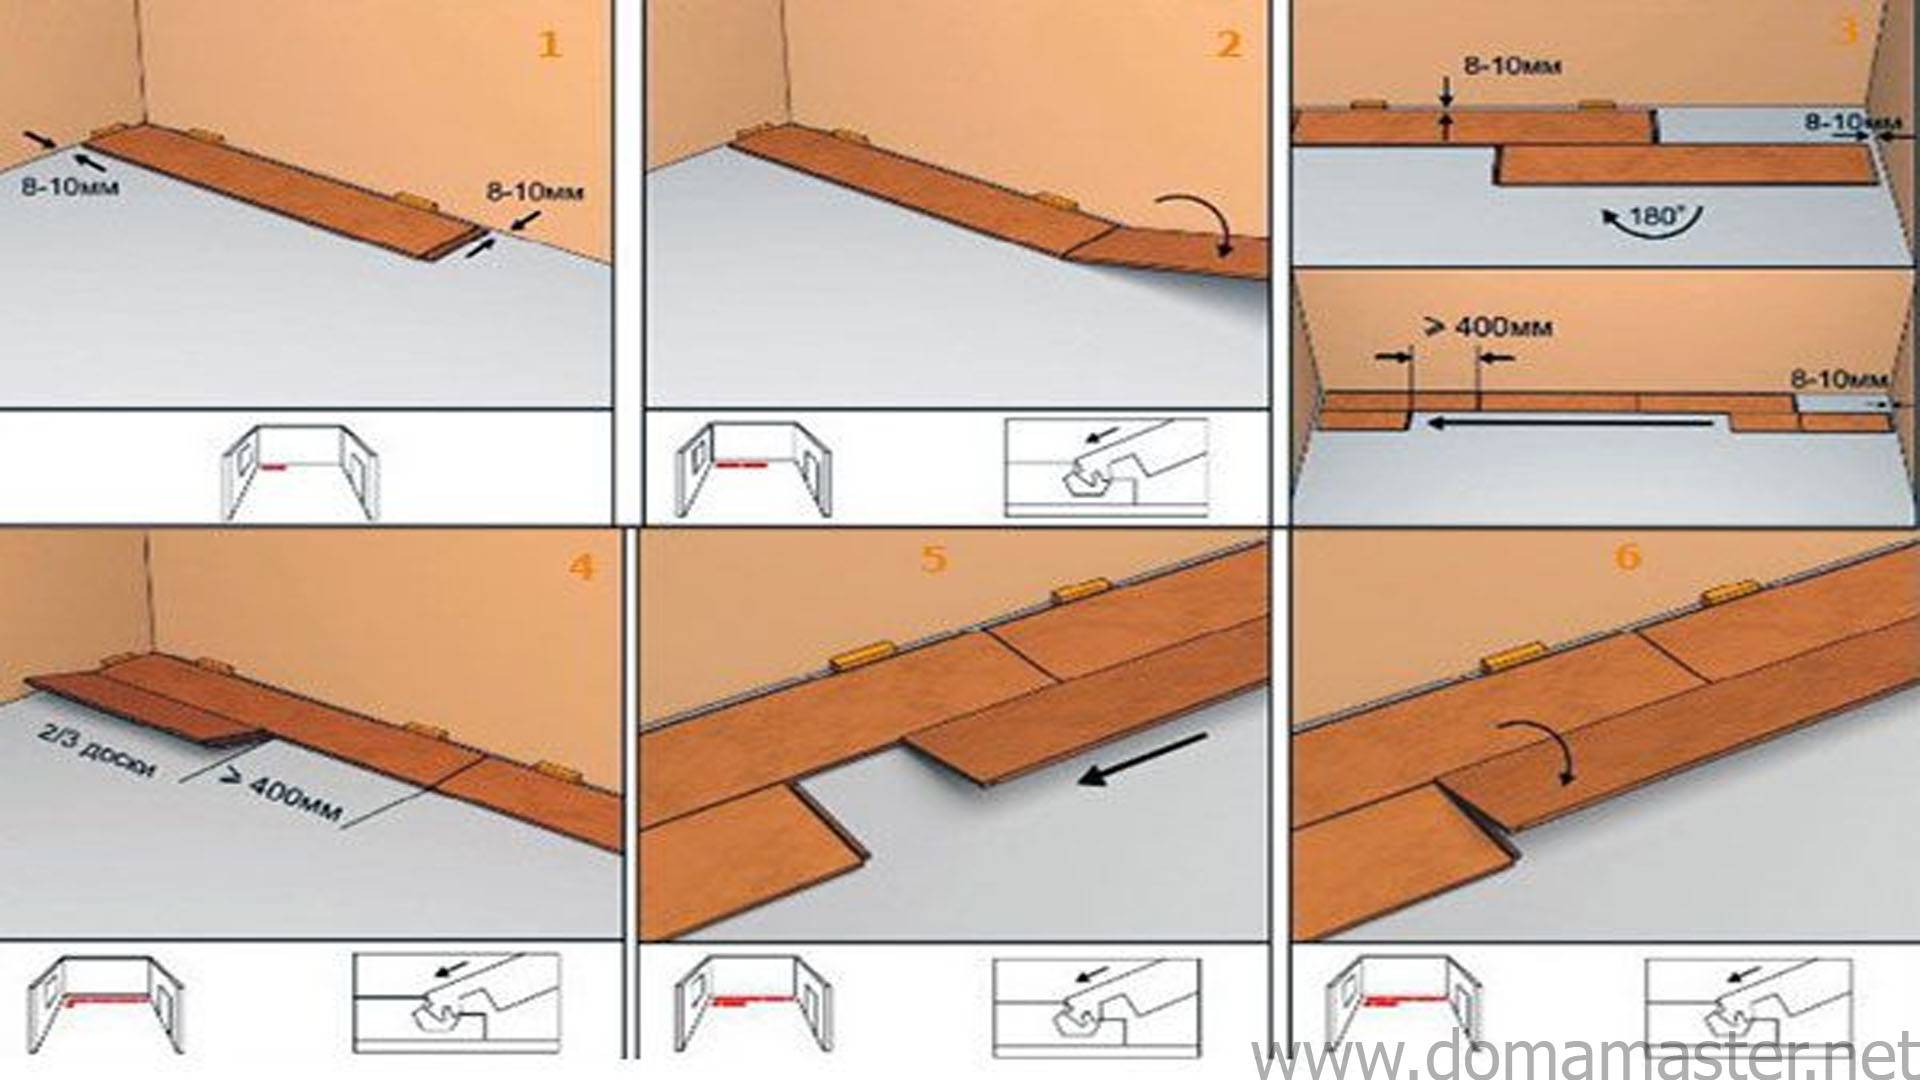 Особенности подготовки основания и укладки ламината на бетонный пол